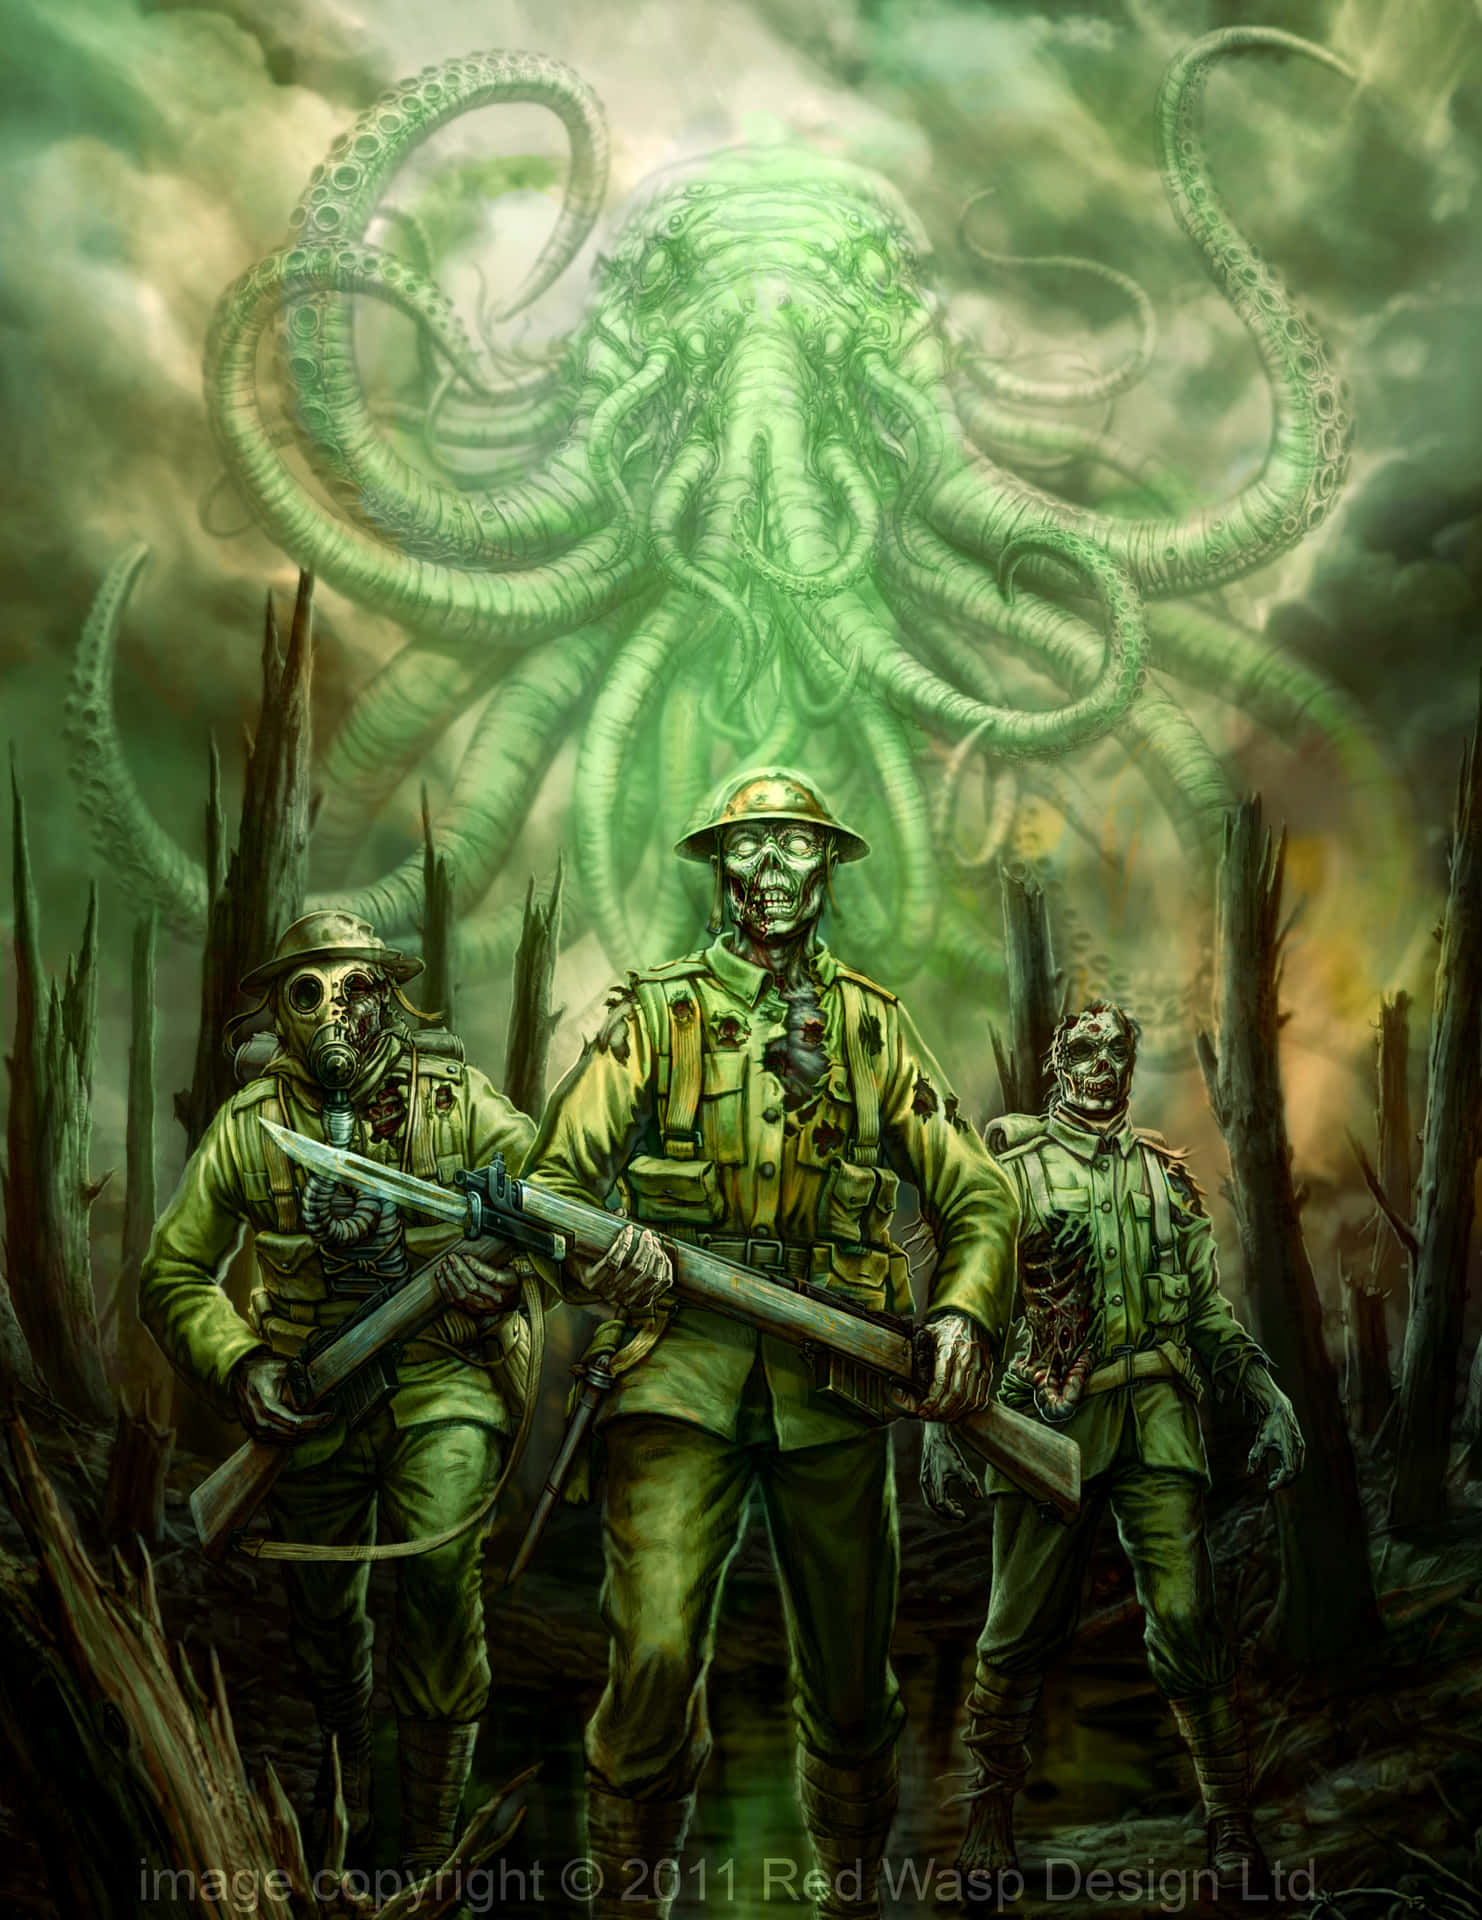 Einegruppe Von Soldaten Steht Vor Einem Grünen Oktopus.